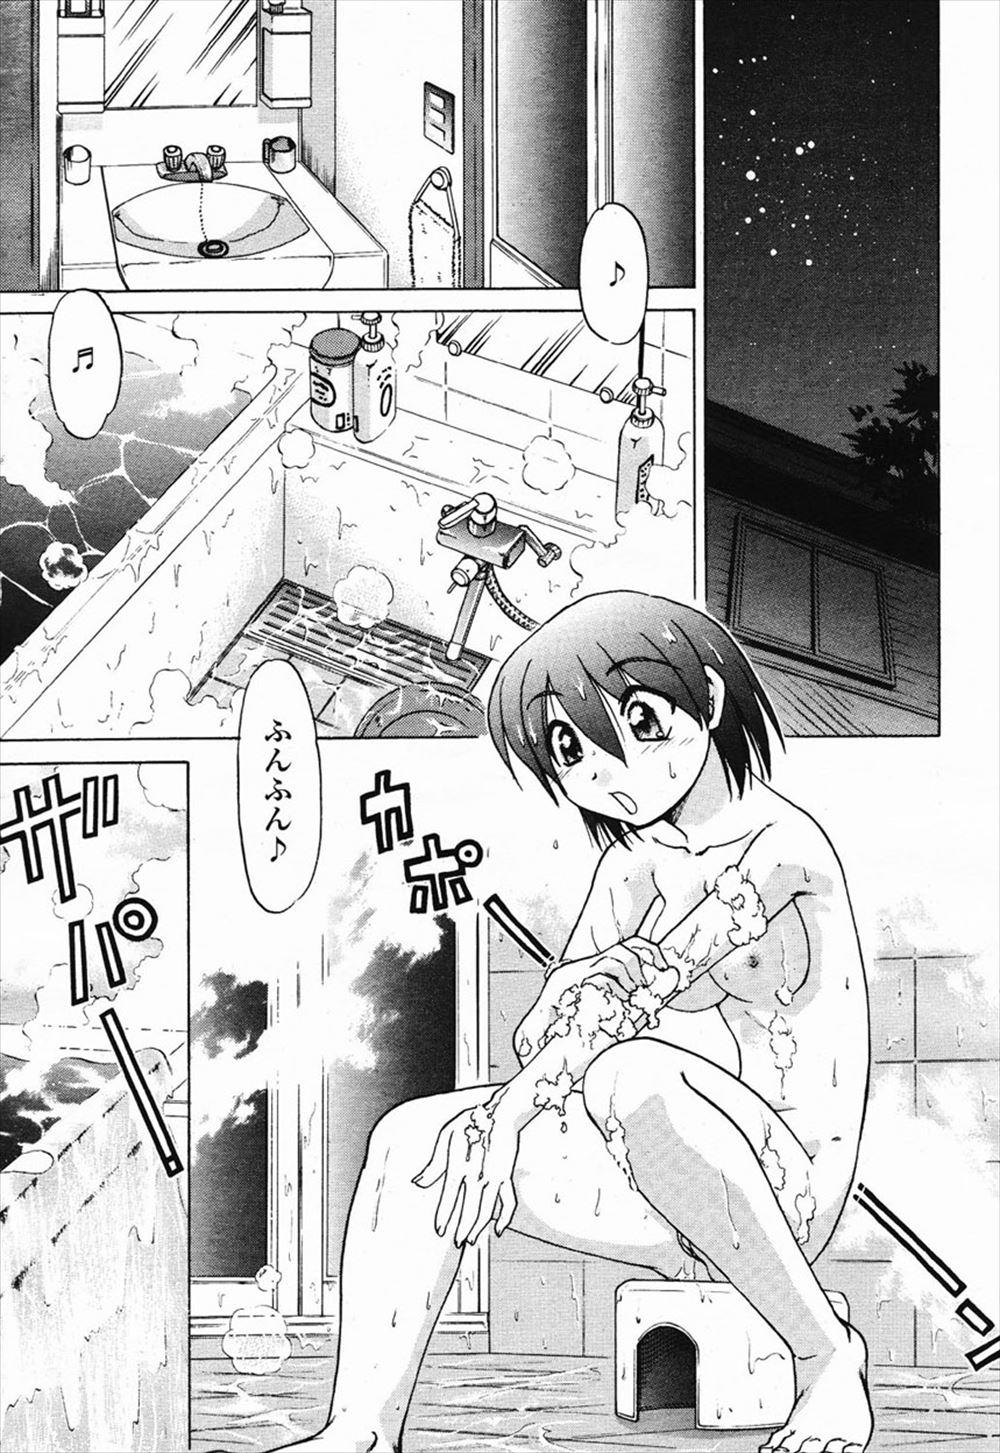 【エロ漫画】大好きな幼なじみの事を思いながら石鹸を使って風呂場でオナニーしていたら、幼なじみが乱入してきて無理やりフェラチオさせられちゃったwww